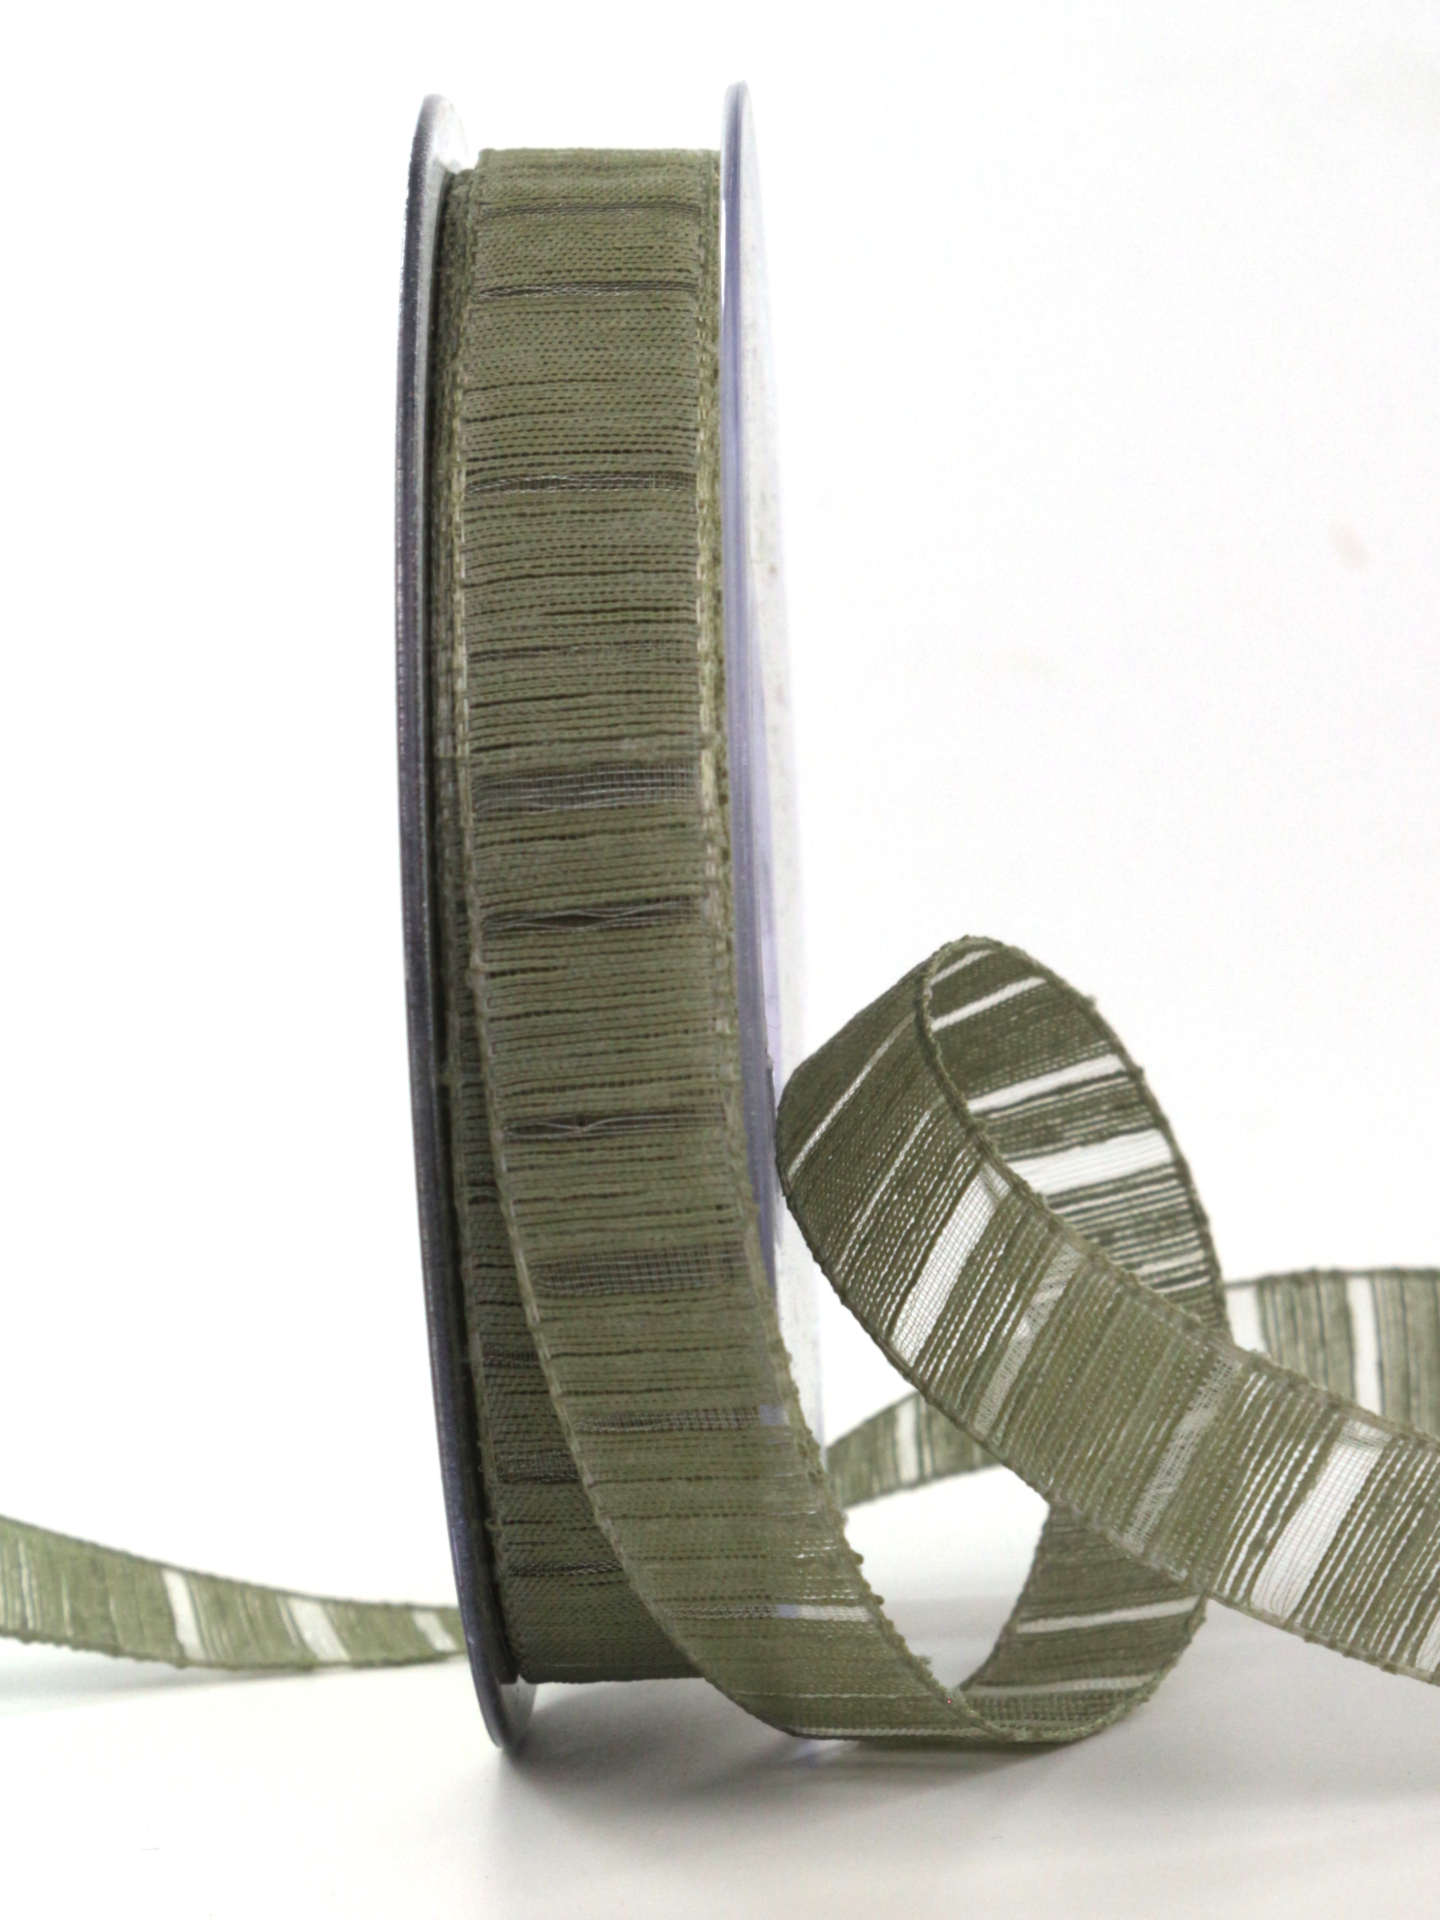 Deko- und Geschenkband mit Streifenmuster, moosgrün, 15 mm breit, 20 m Rolle - geschenkband-einfarbig, dekoband, geschenkband